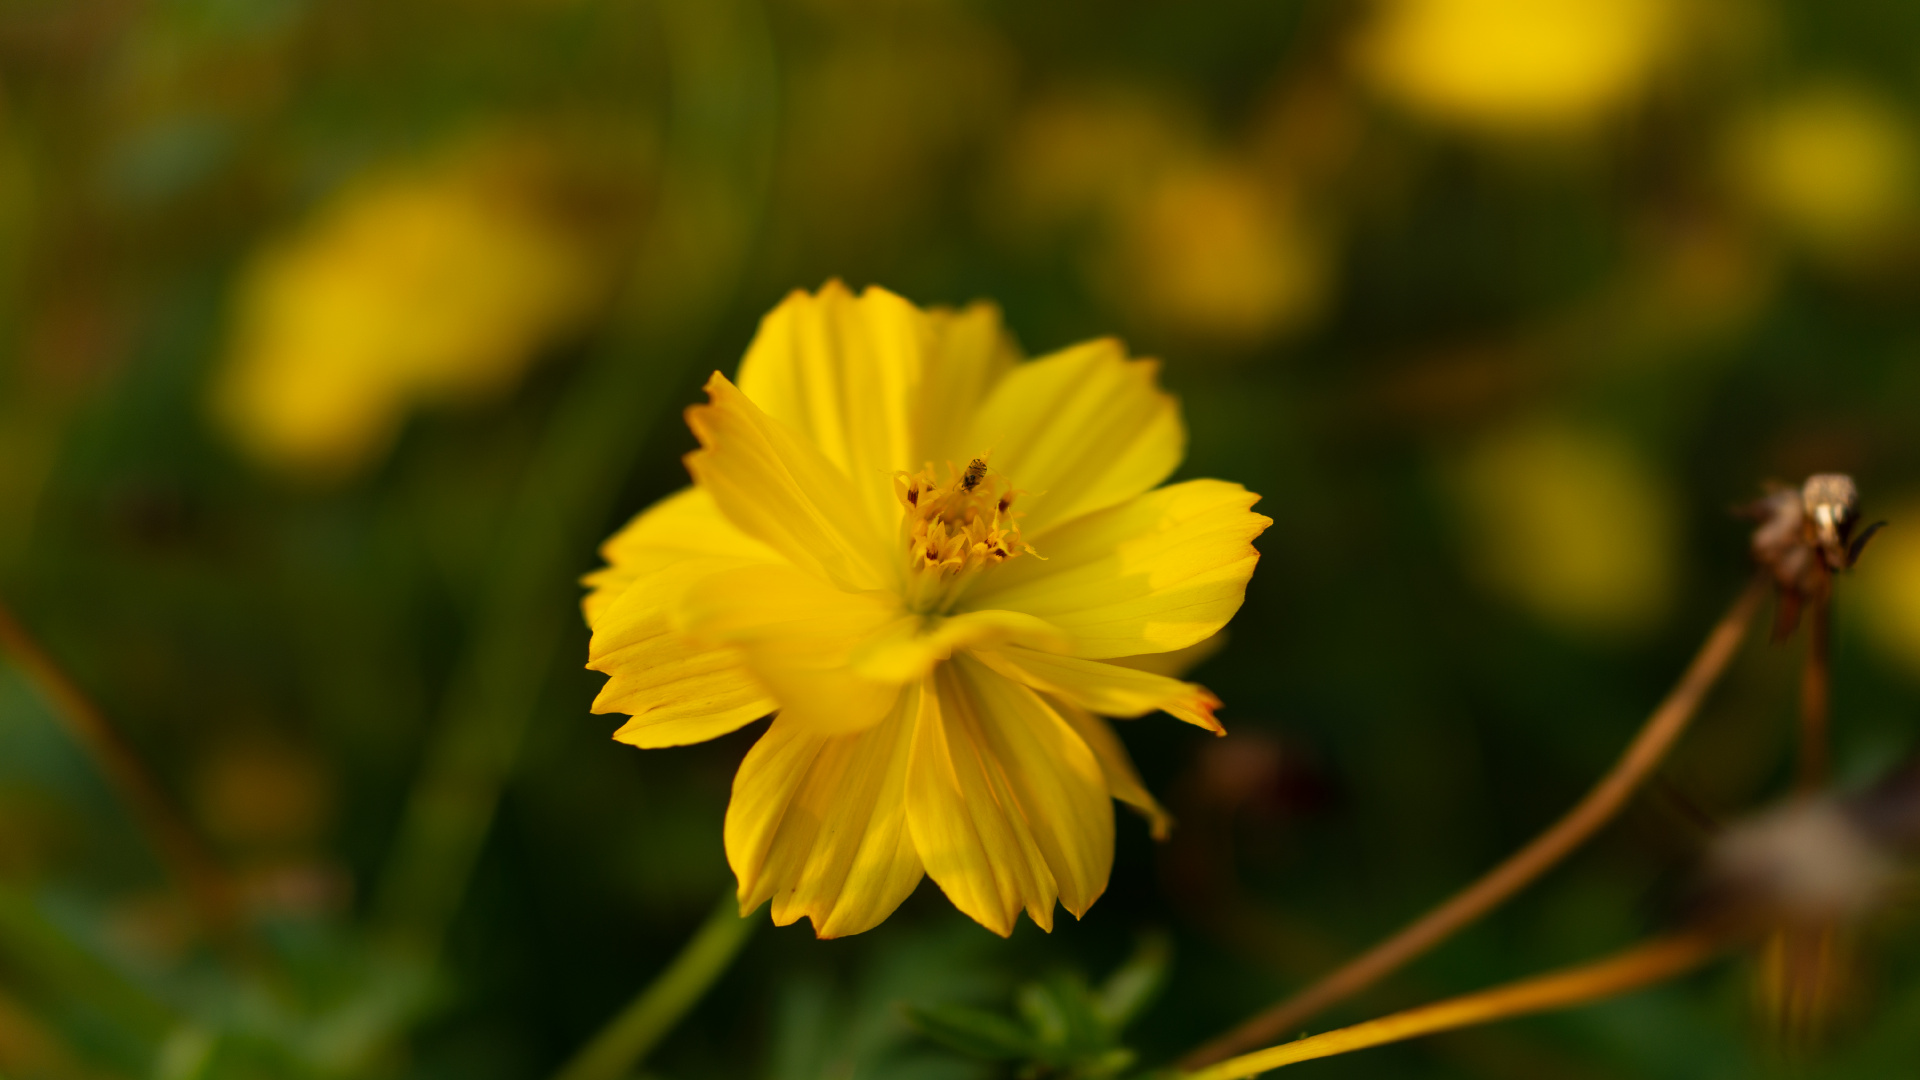 Yellow Flower in Tilt Shift Lens. Wallpaper in 1920x1080 Resolution